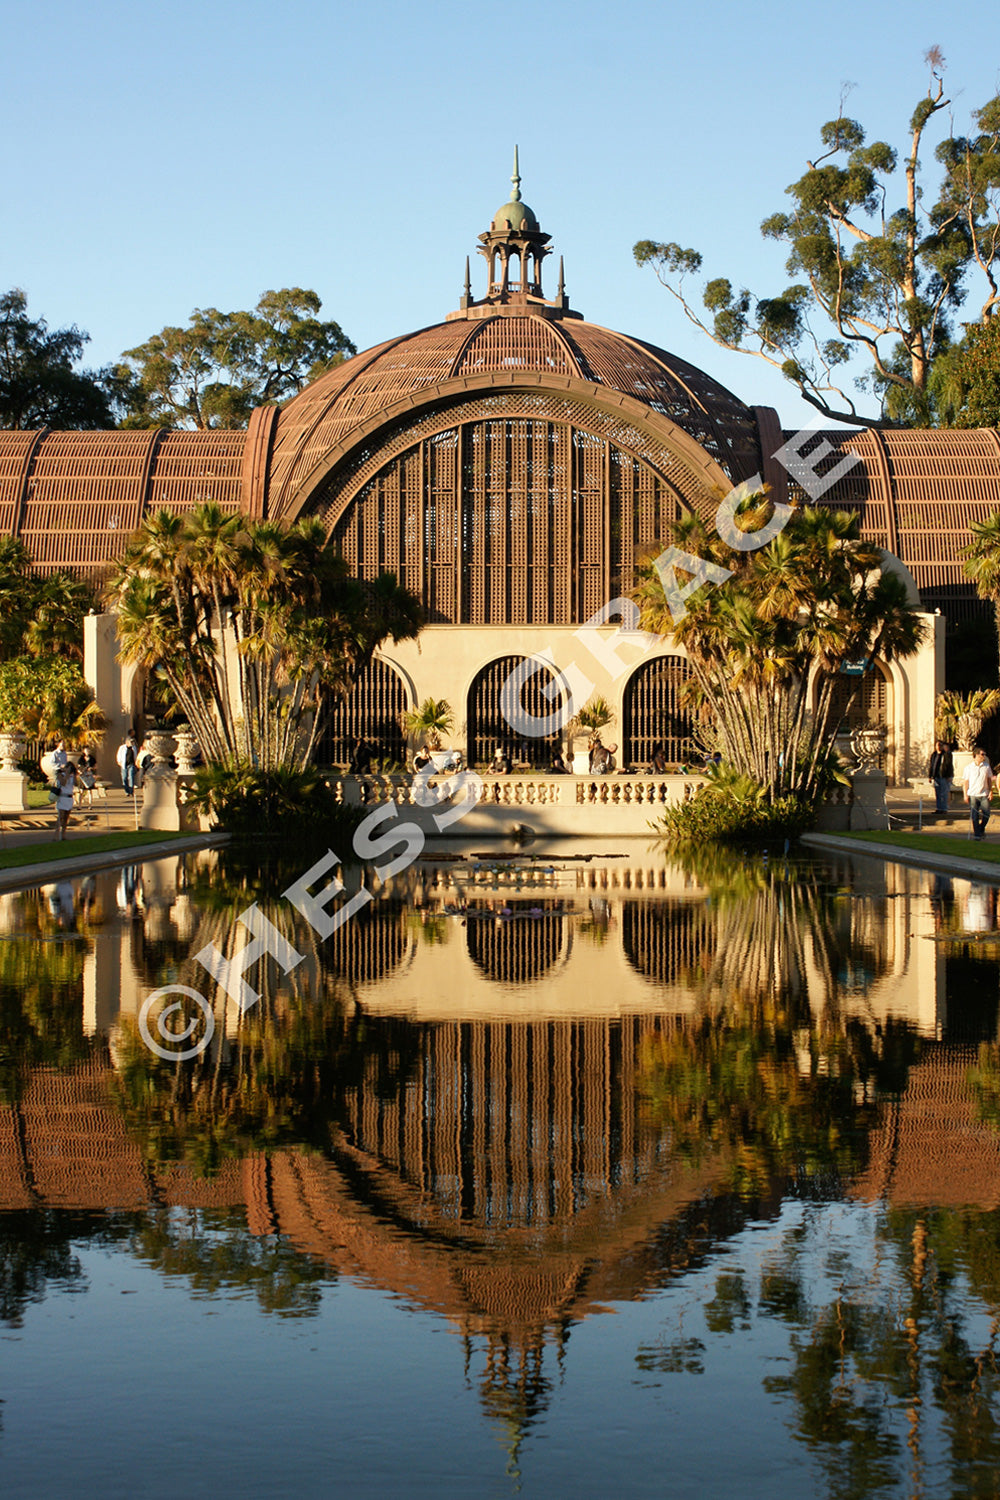 Balboa Park Botanical Garden